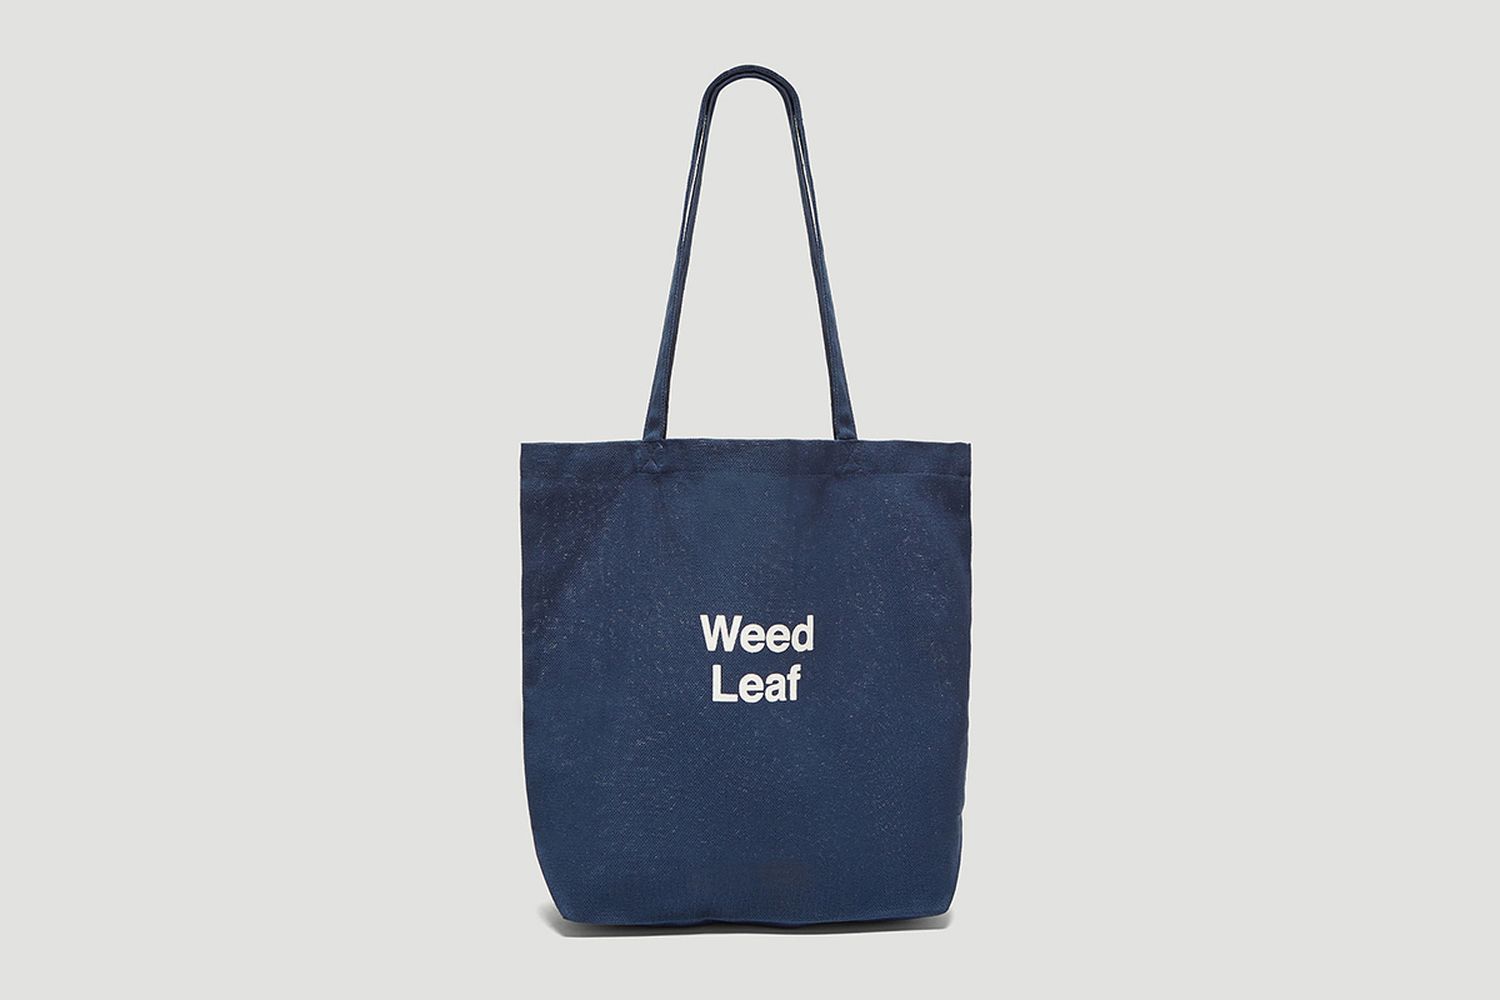 Weed Leaf Tote Bag